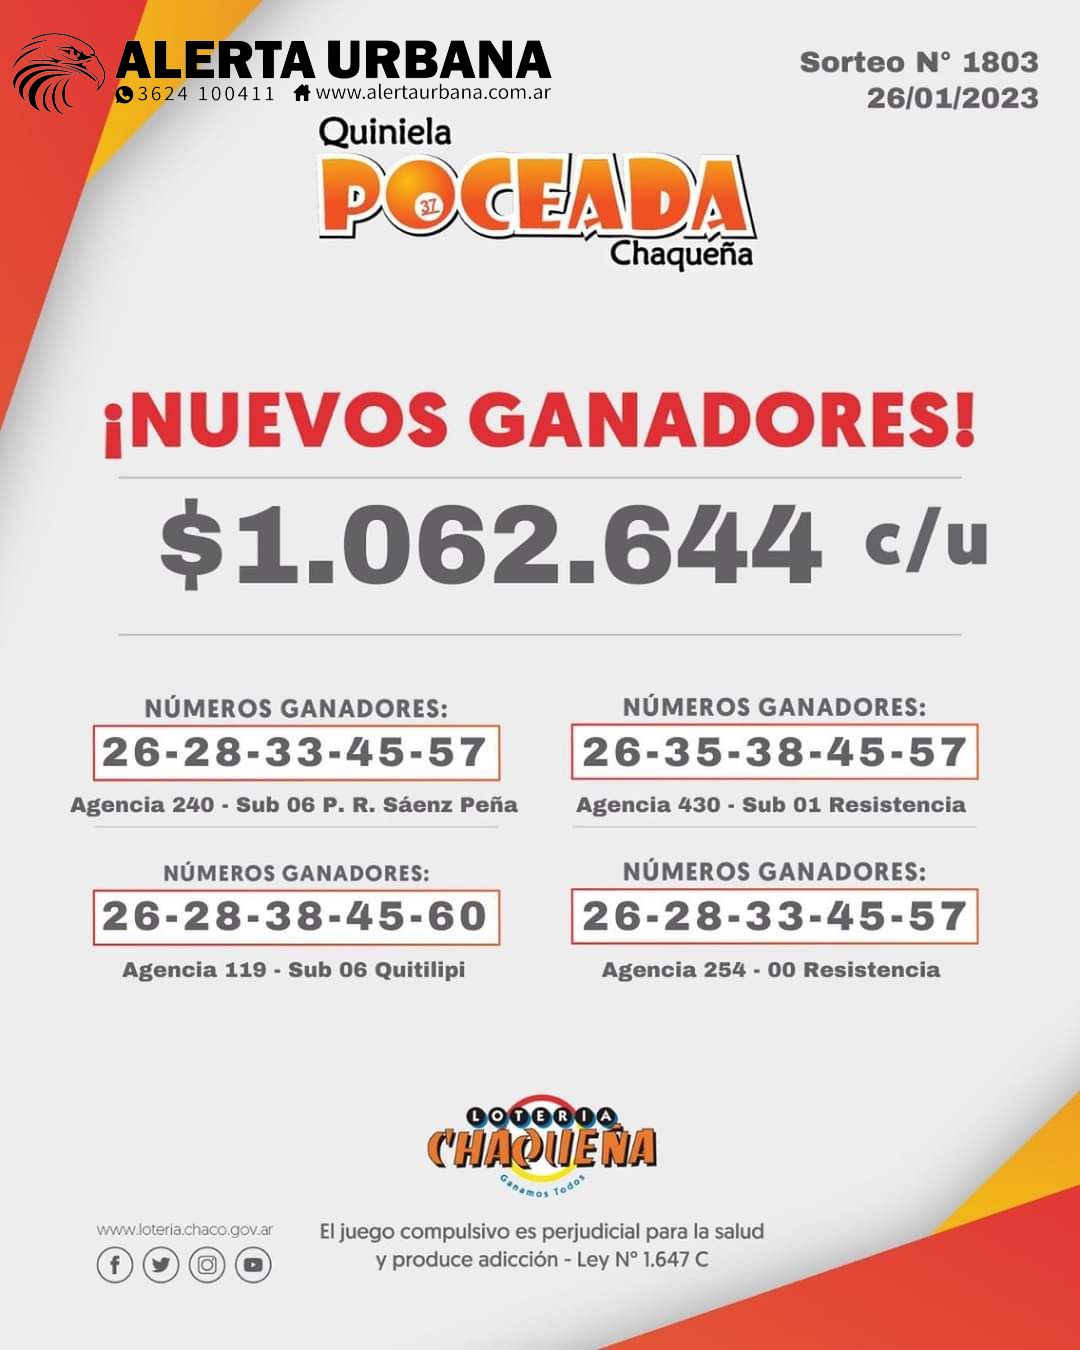 Cuatro apostadores se llevaron más de $1.000.000 con la Poceada Chaqueña